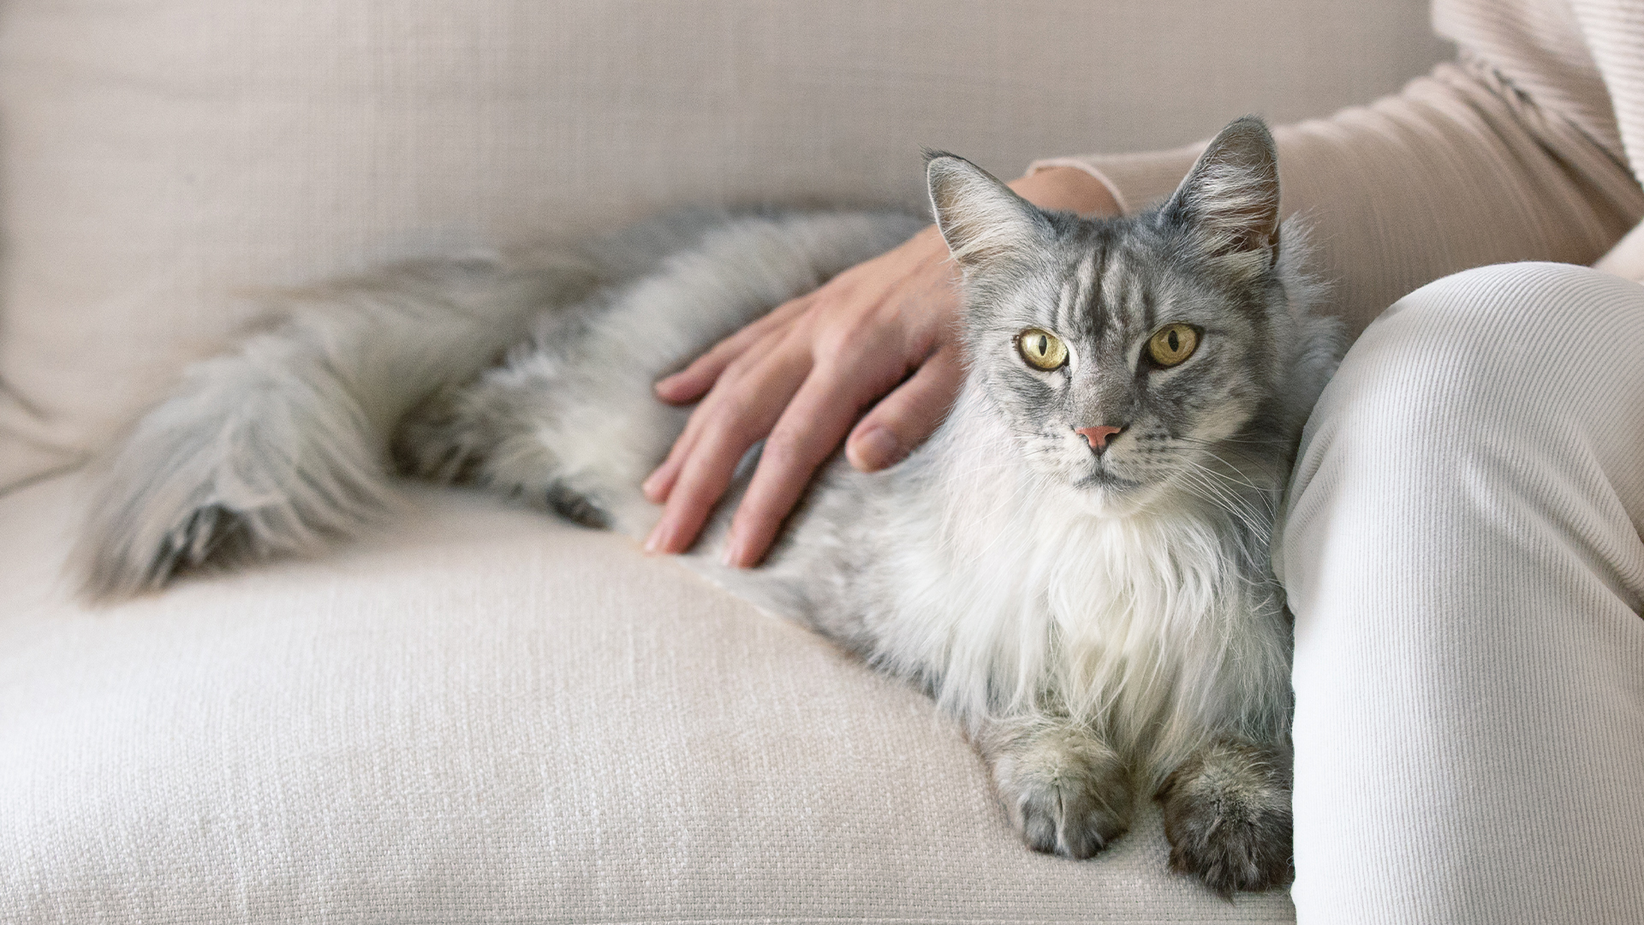 Ilgaplaukė pilka katė, gulinti ant sofos, šeimininko ranka uždėta jai ant nugaros